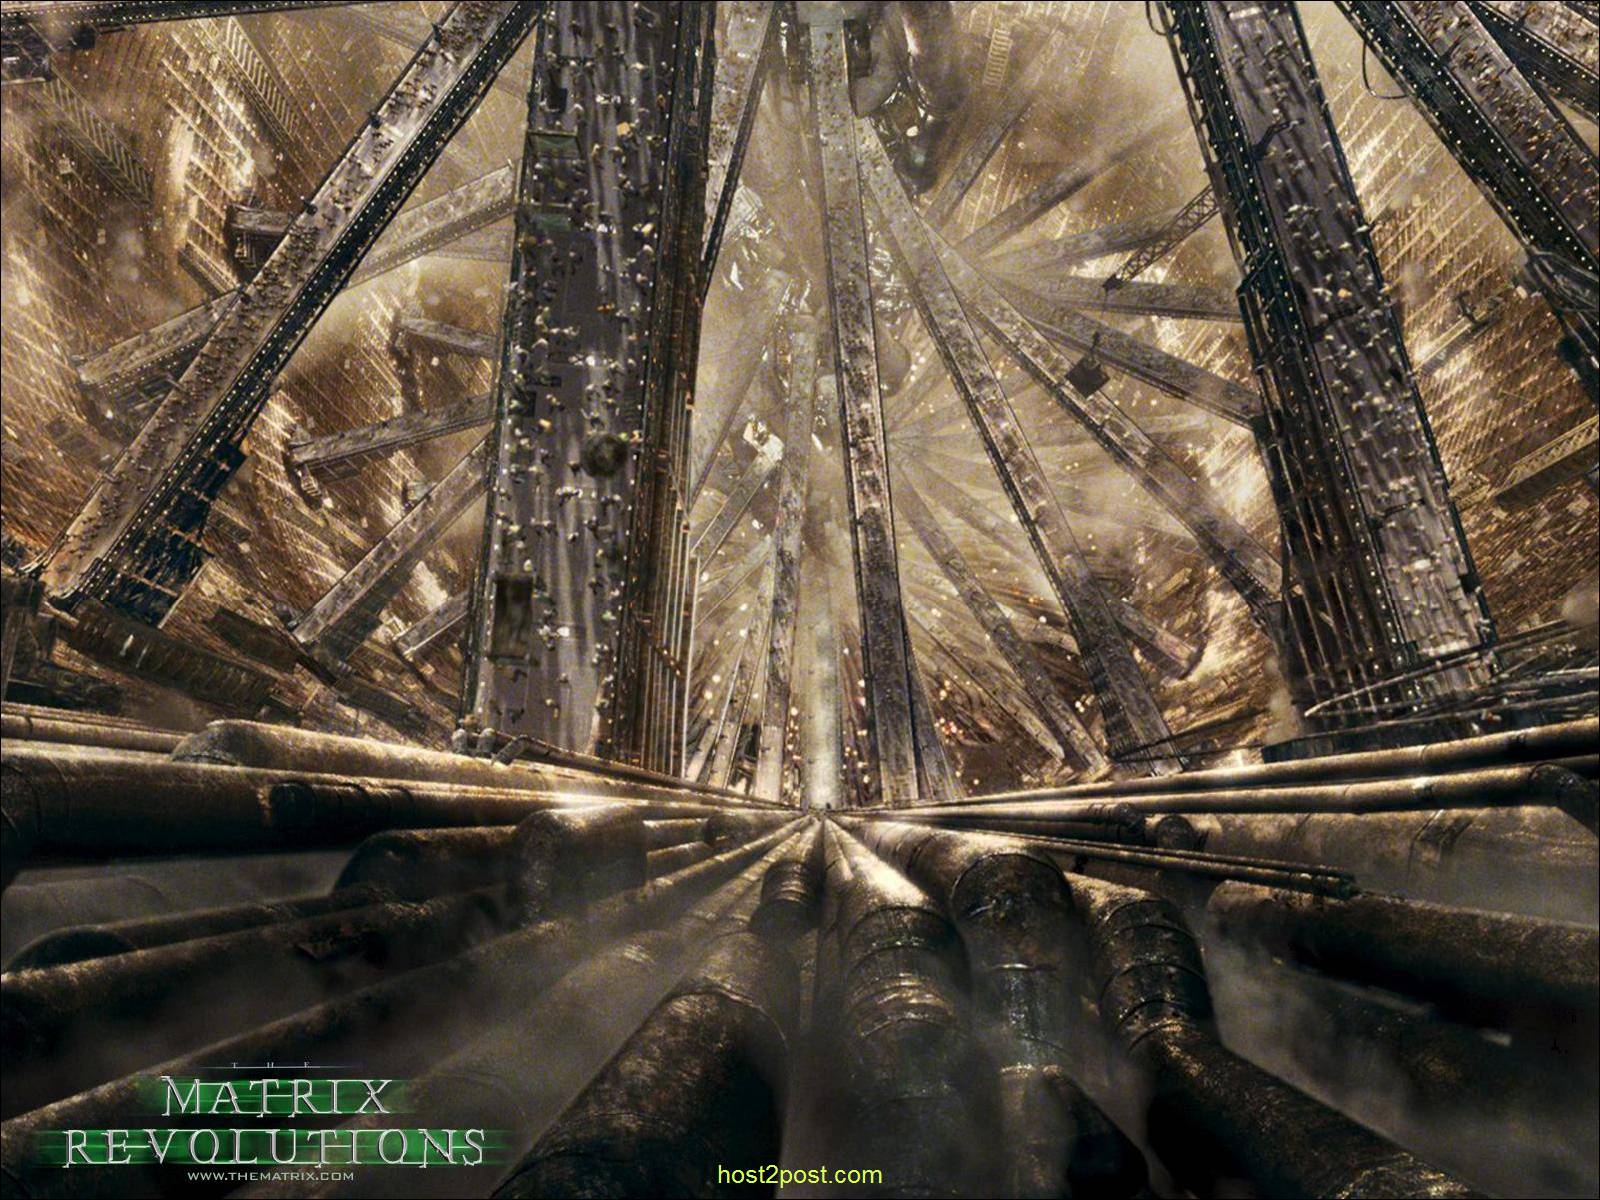 The Matrix Revolutions Wallpaper